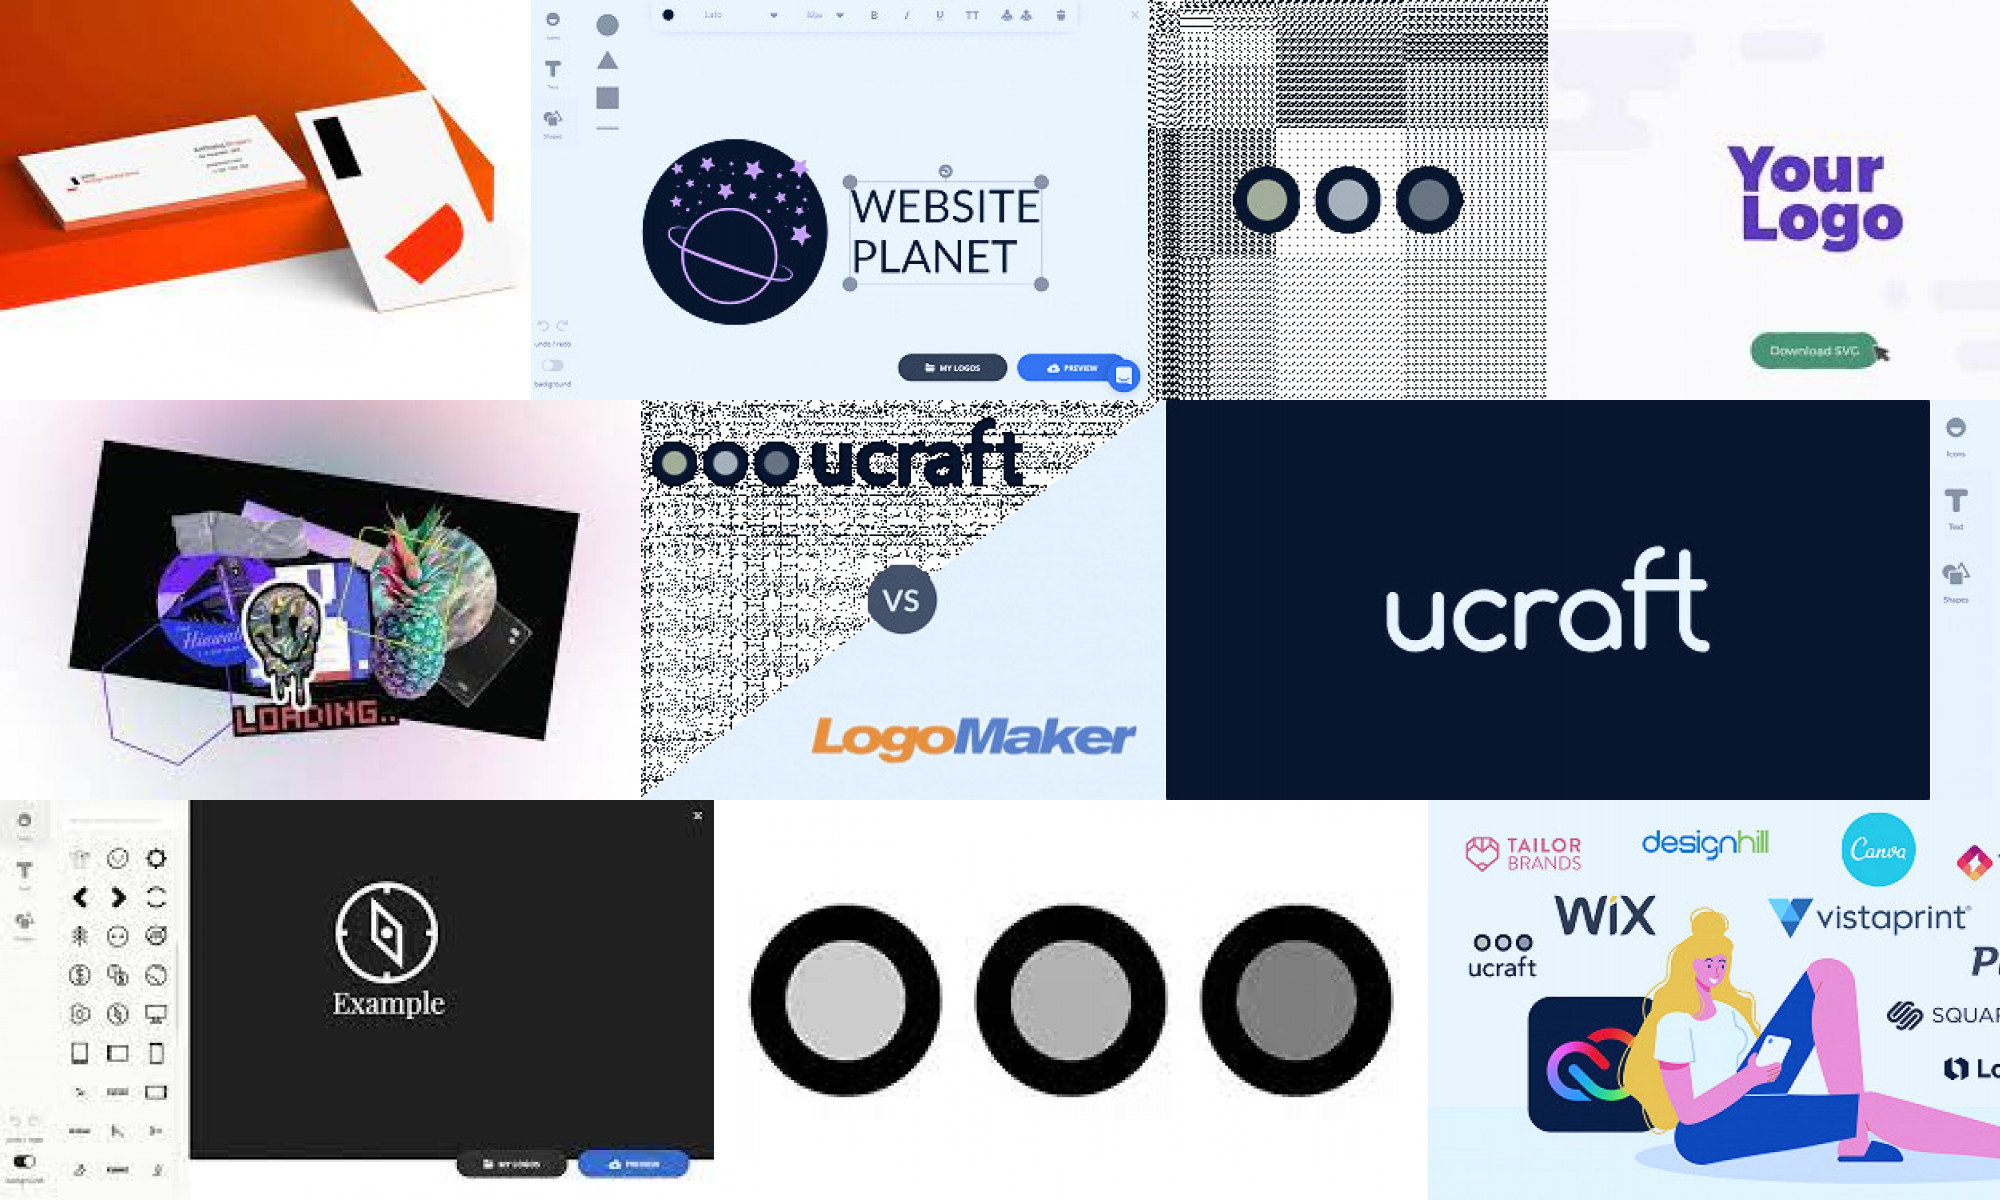 ucraft logo maker